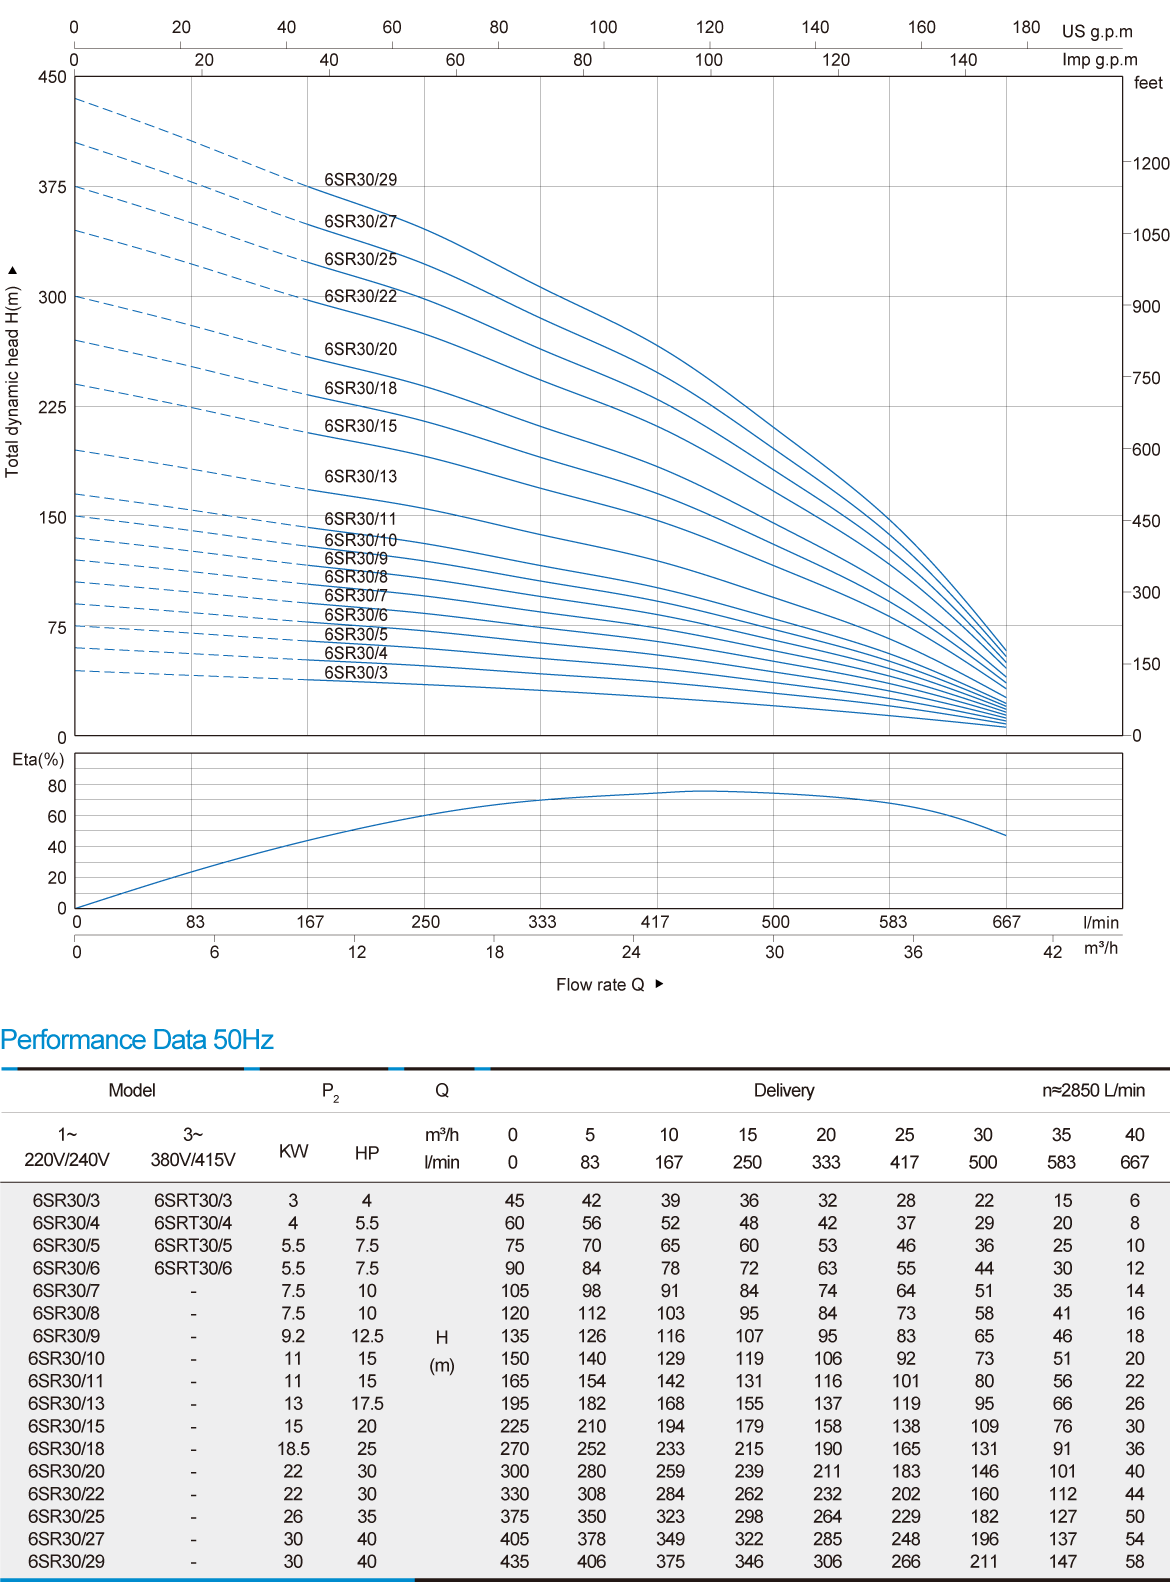 نمودار میزان عملکرد پمپ شناور 6SR30